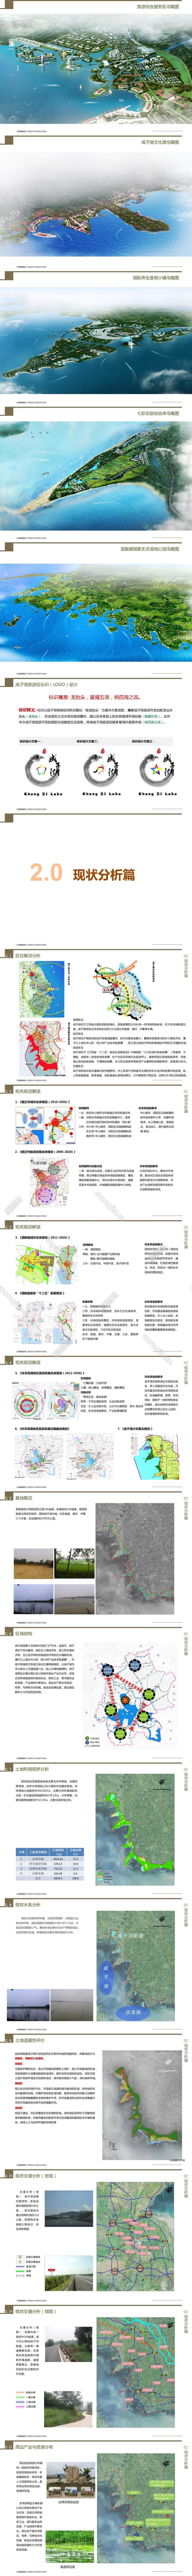 41泗阳县度假小镇成子湖旅游总体规划_00.jpg